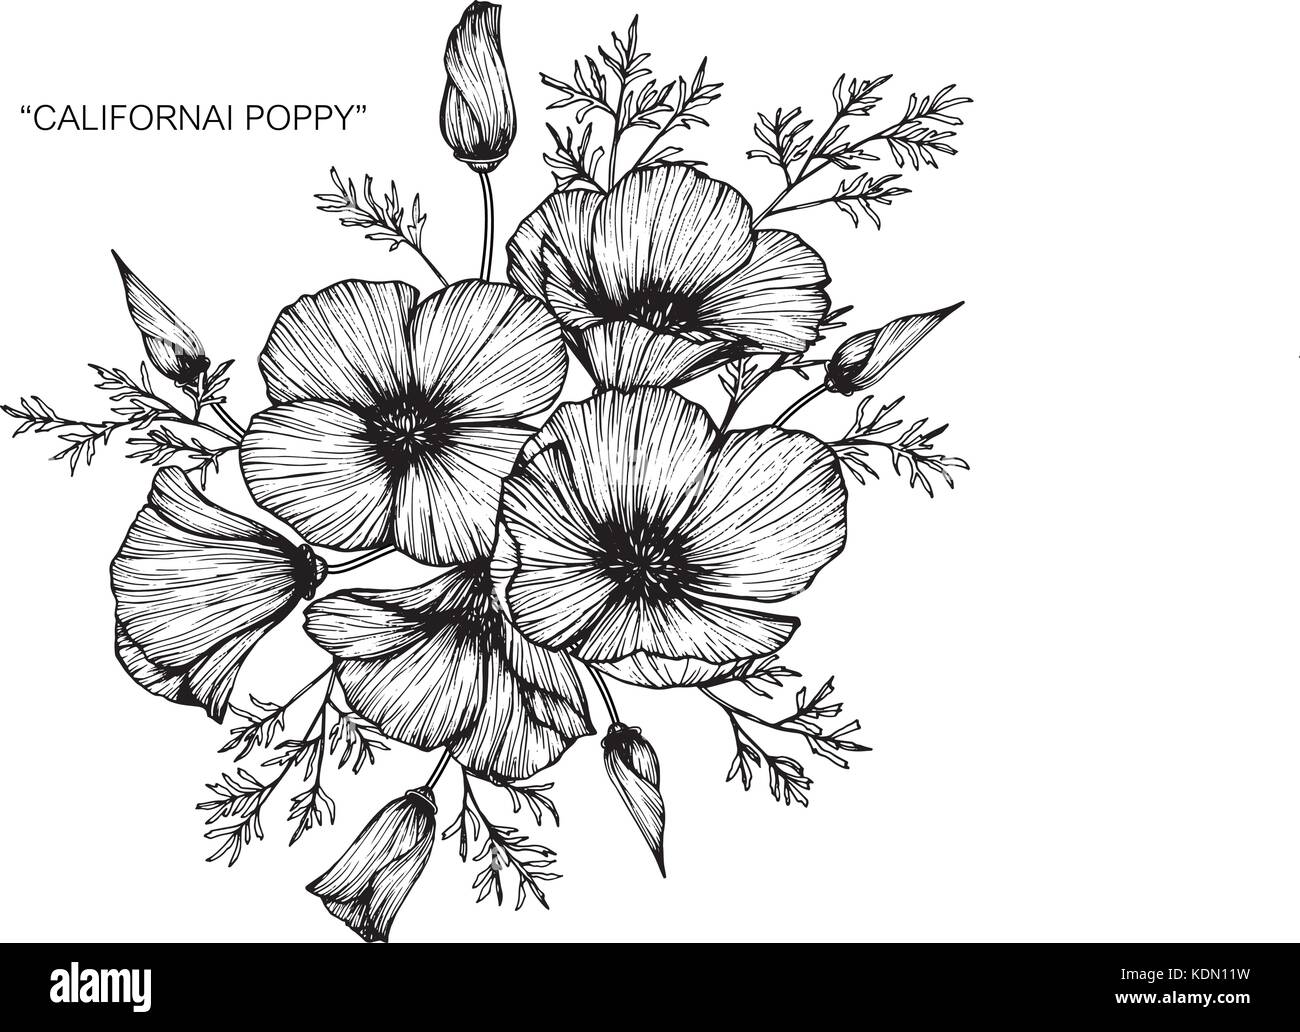 How To Draw A Poppy